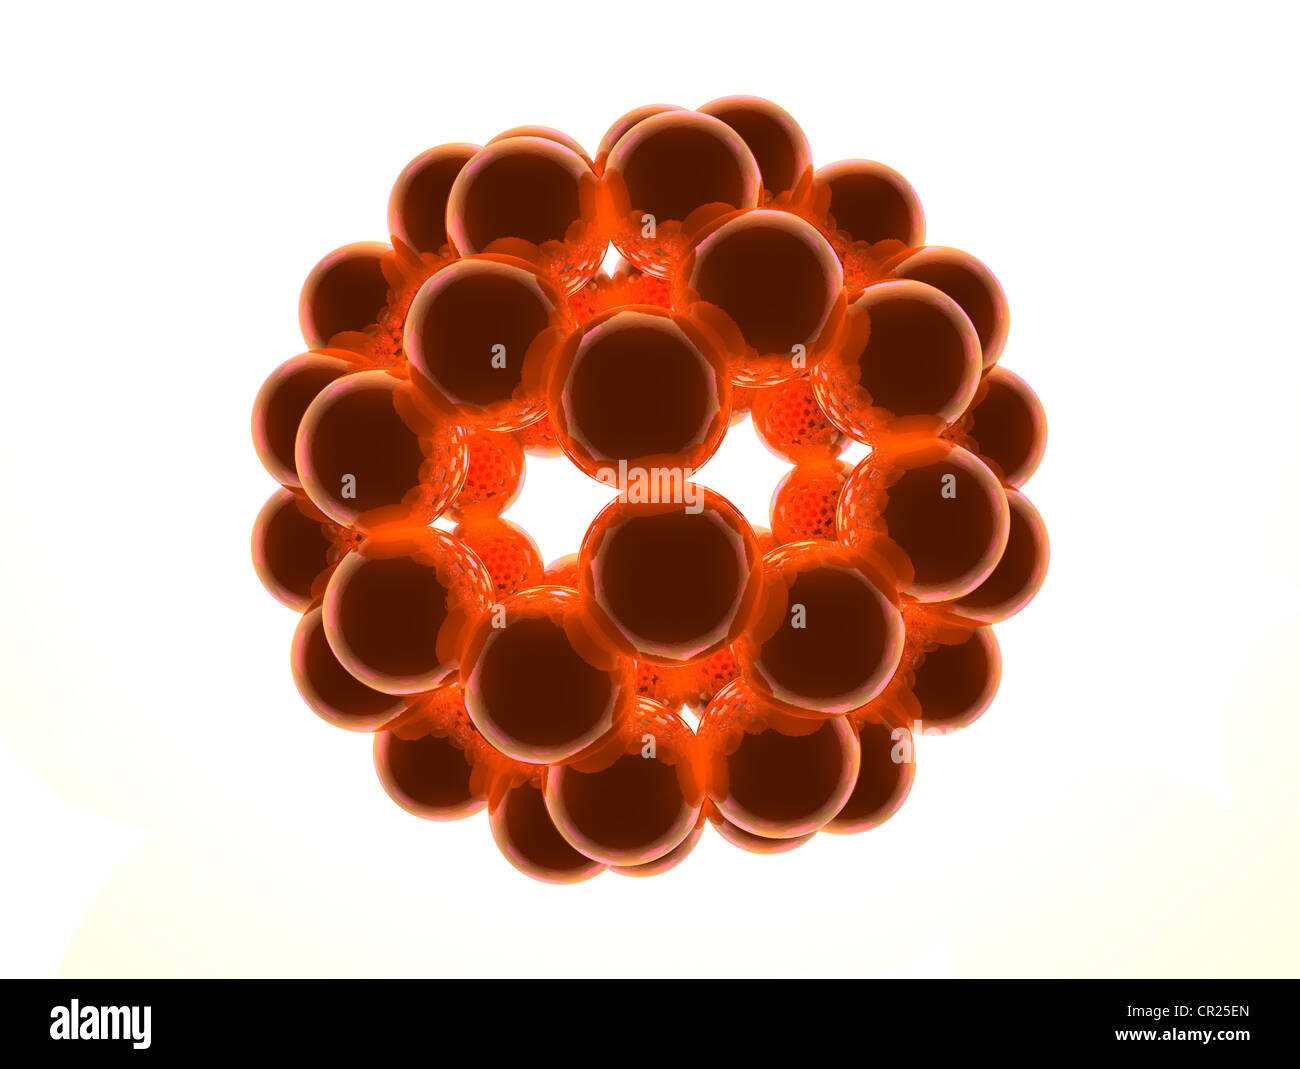 molecular model of a buckyball Stock Photo